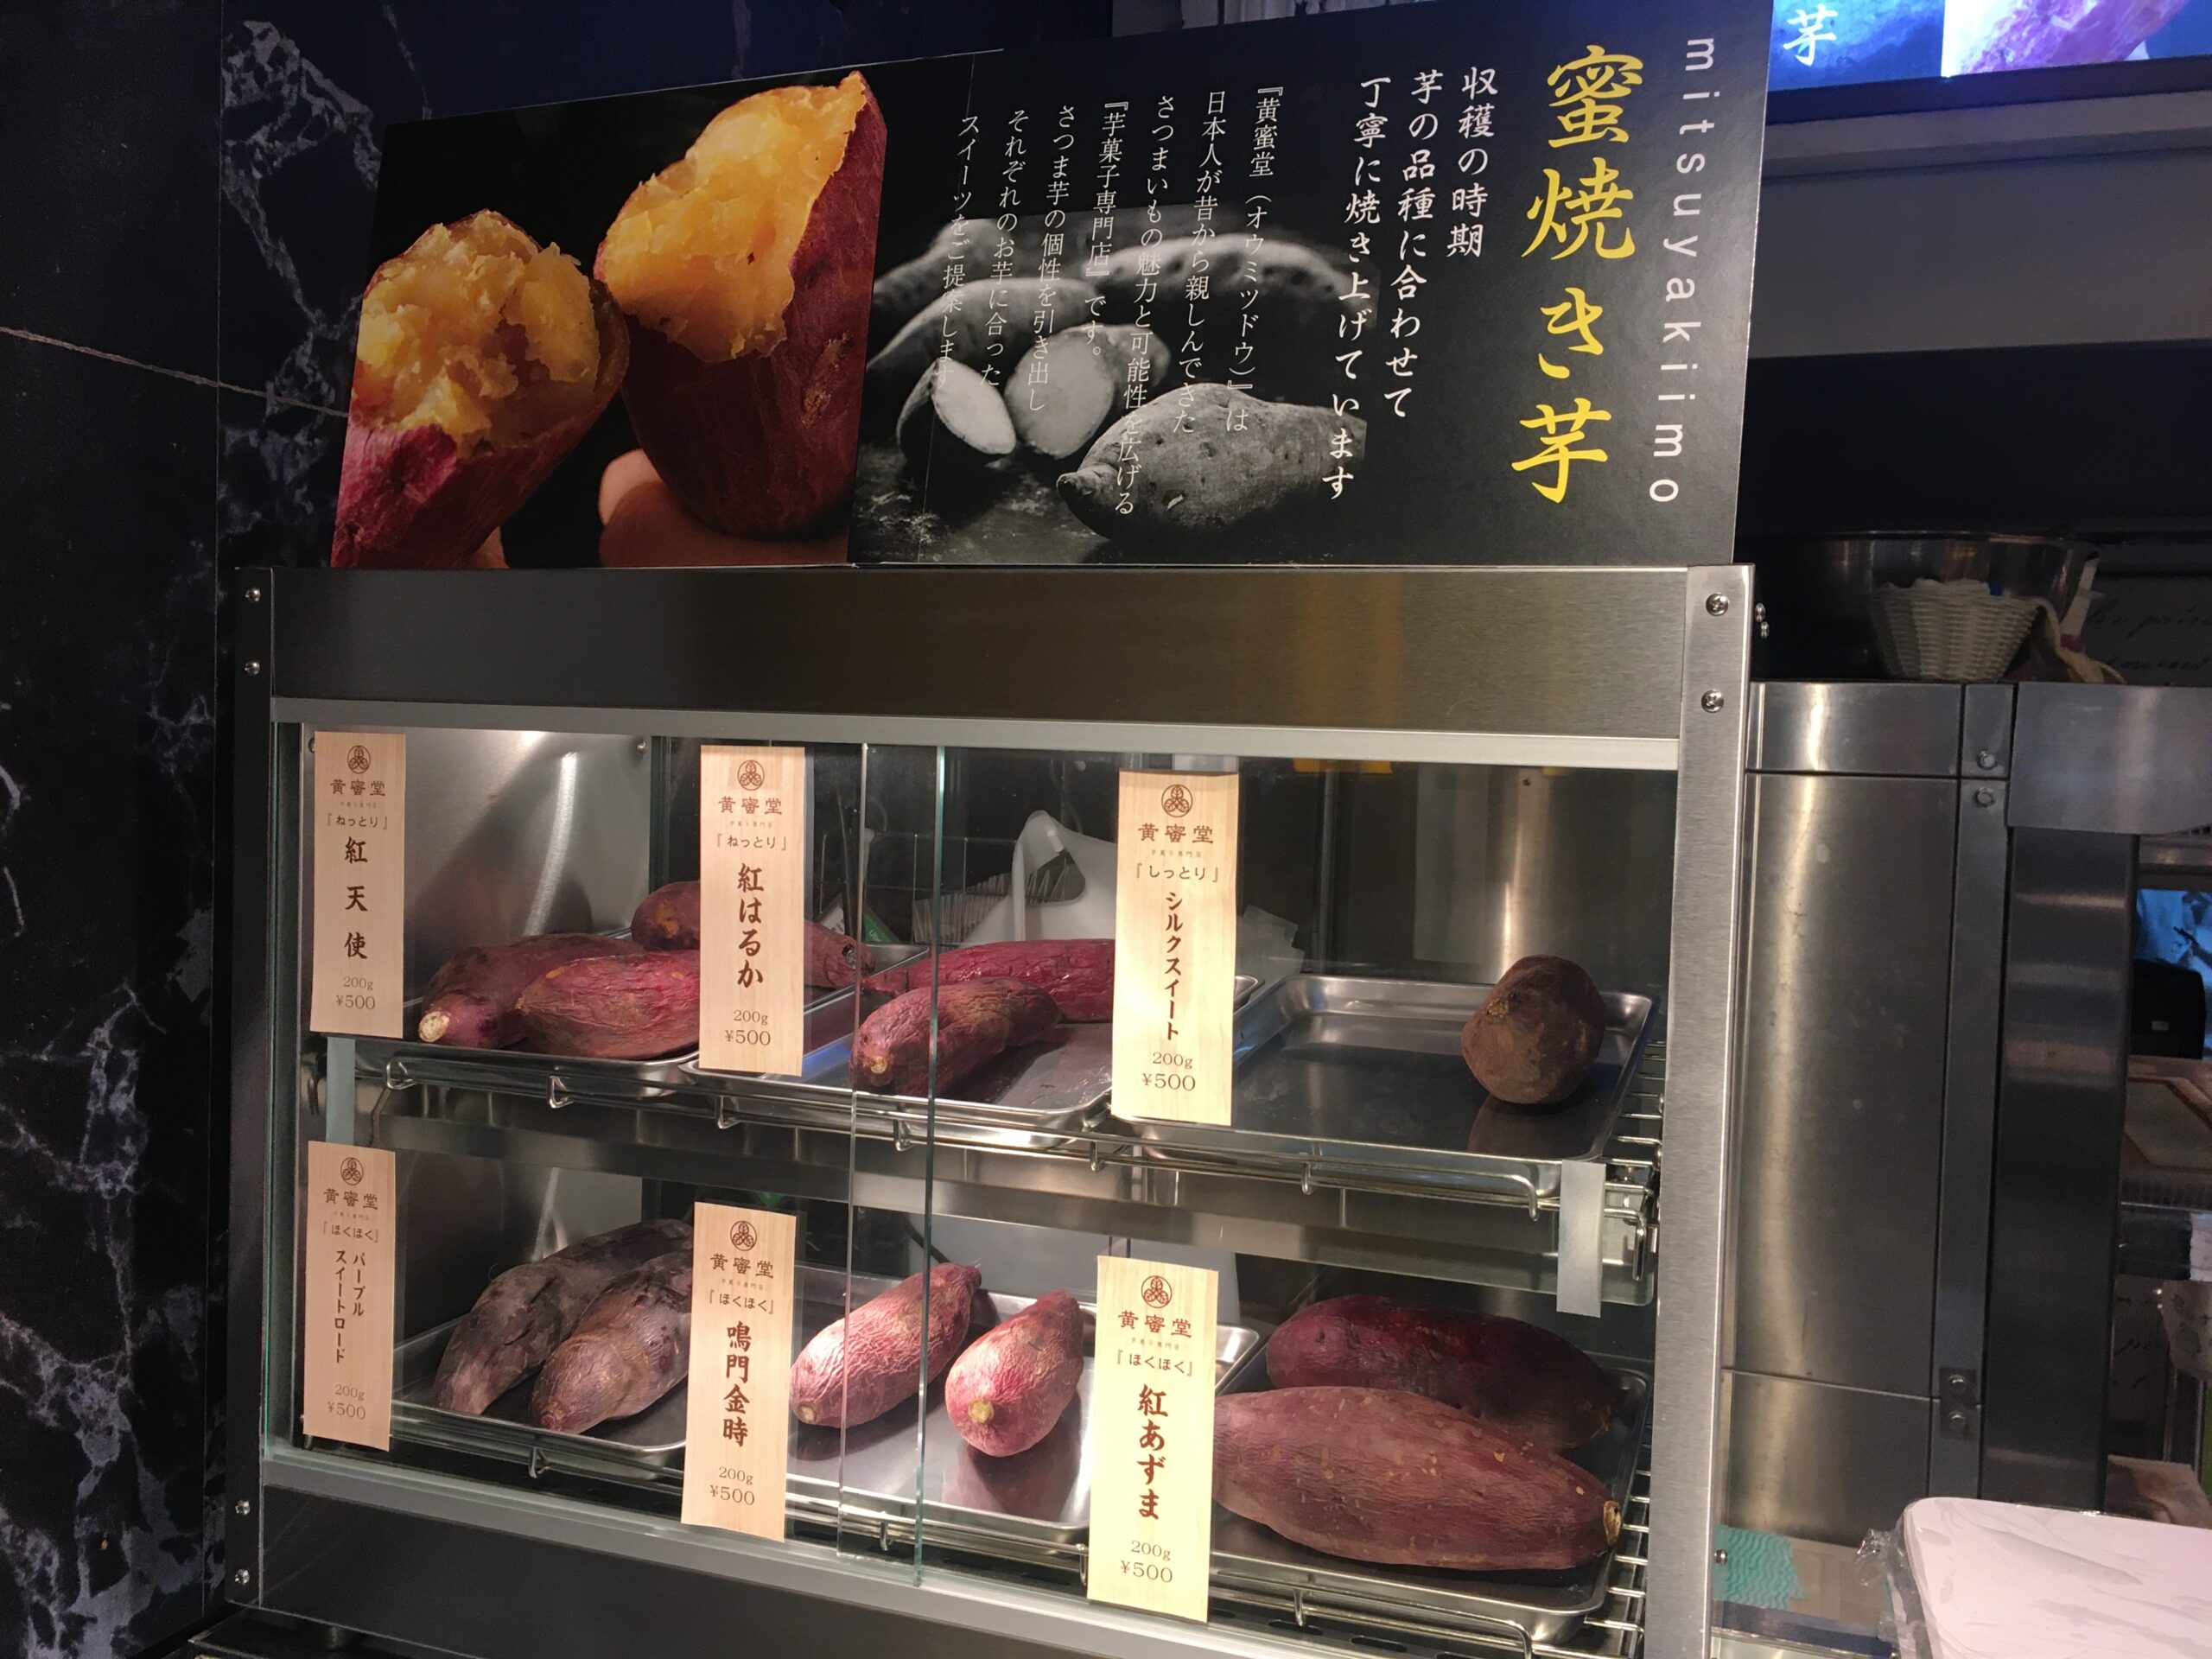 芋菓子専門店 黄蜜堂焼き芋